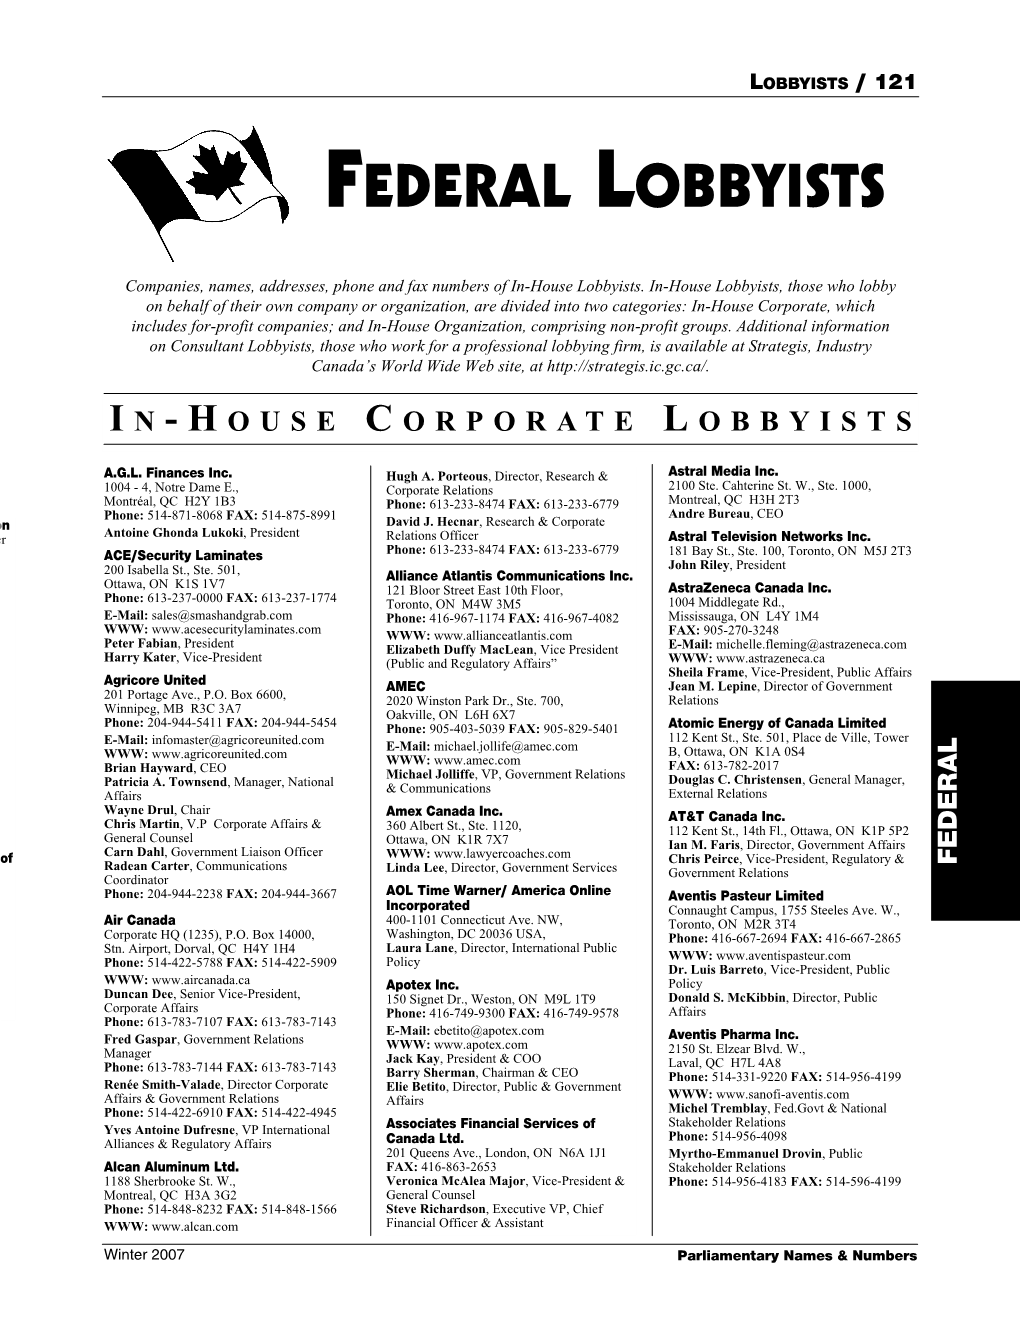 Federal Lobbyists